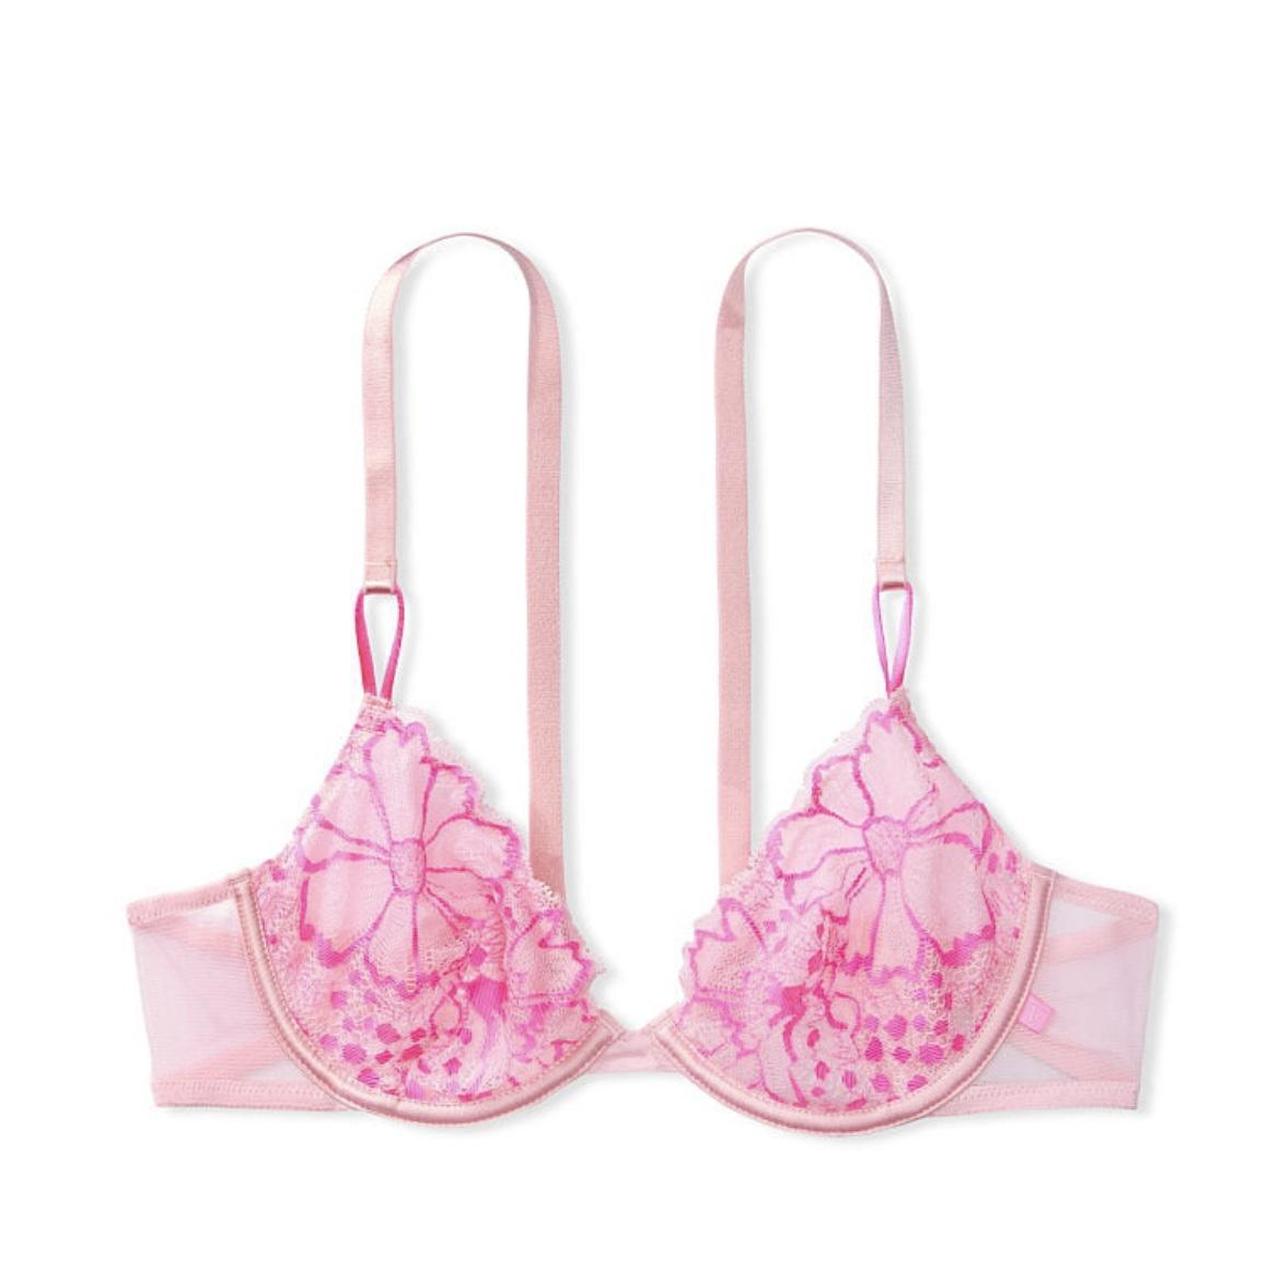  Victoria's Secret Pink Floral Lace Unlined Underwire